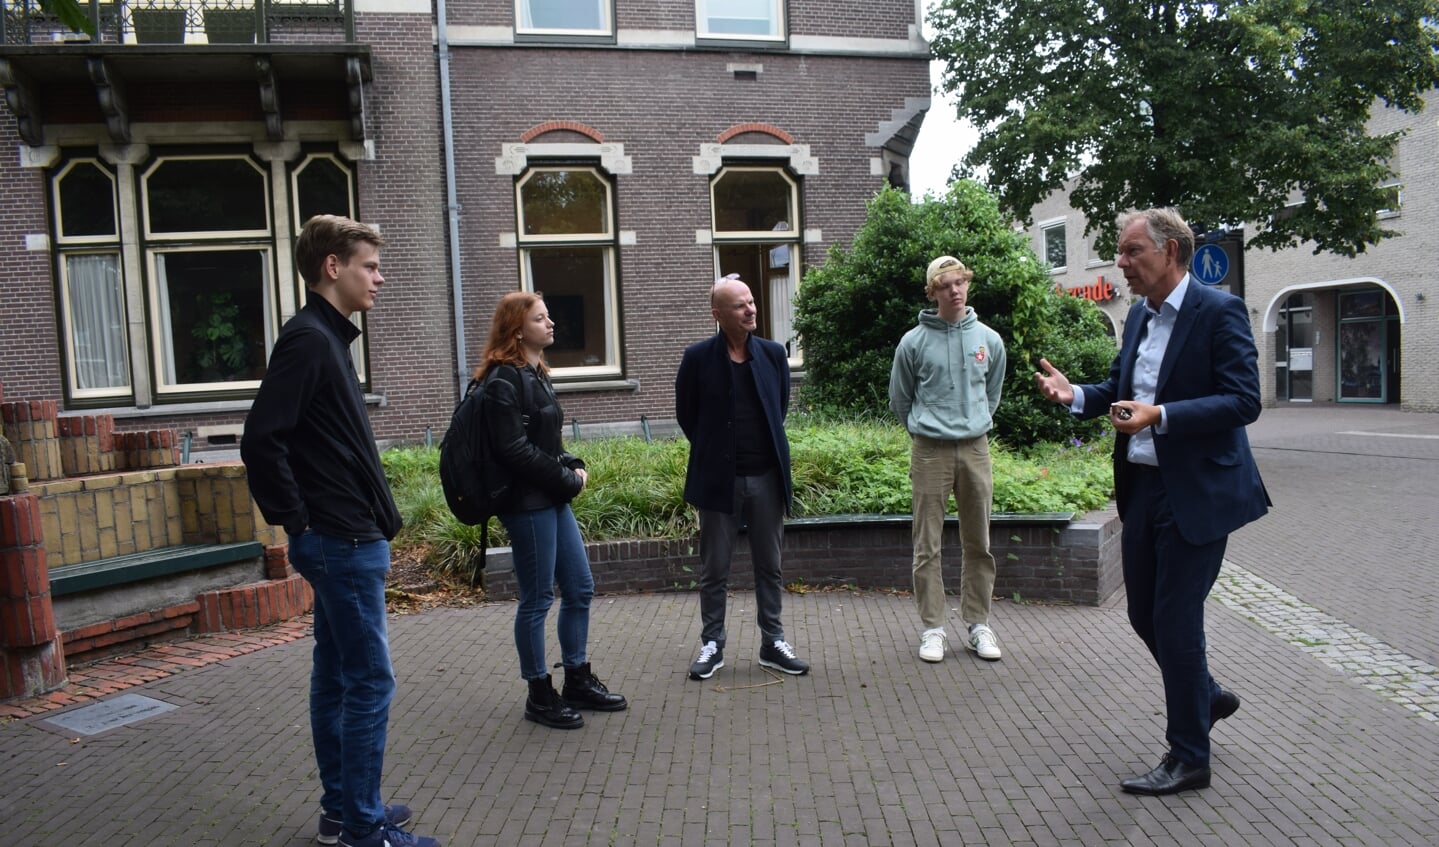 Burgmeester Mark Röell is zeer geïnteresseerd in wat de jongeren hebben te melden. Arne Wind, Yara Janssen, Ad Heessels en Barend Burggraaf (vlnr) luisteren.